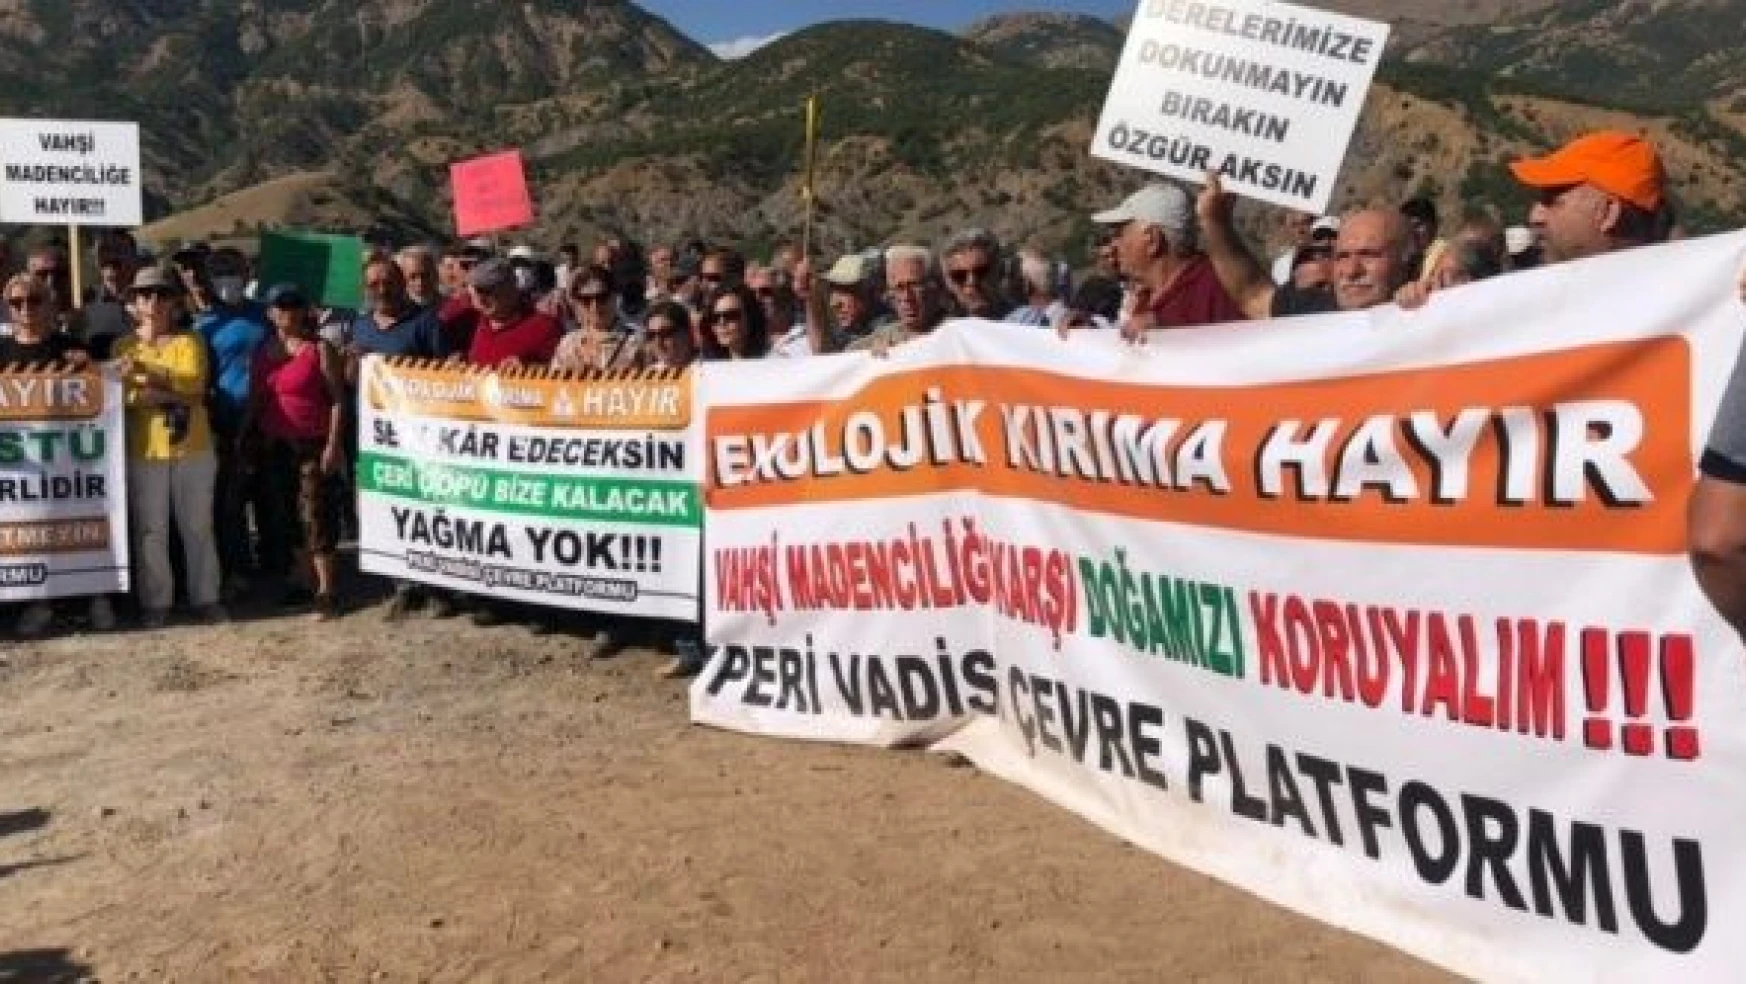 Çevreciler Bingöl'de 'madene hayır' demek için buluştu